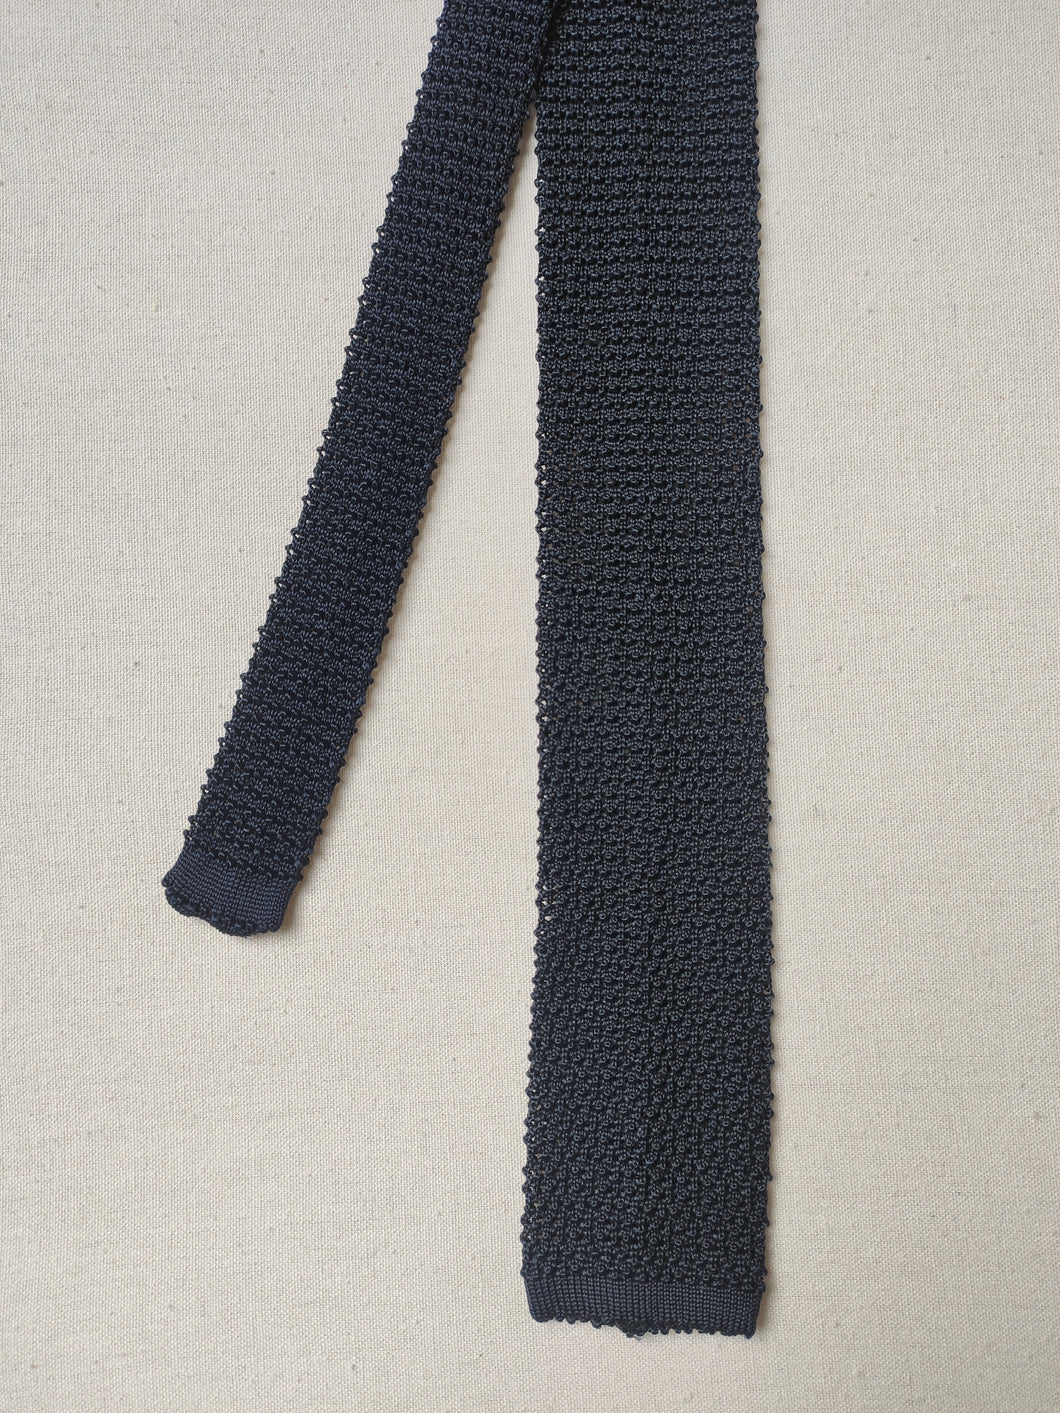 Personality Milano cravate marine vintage en tricot de soie